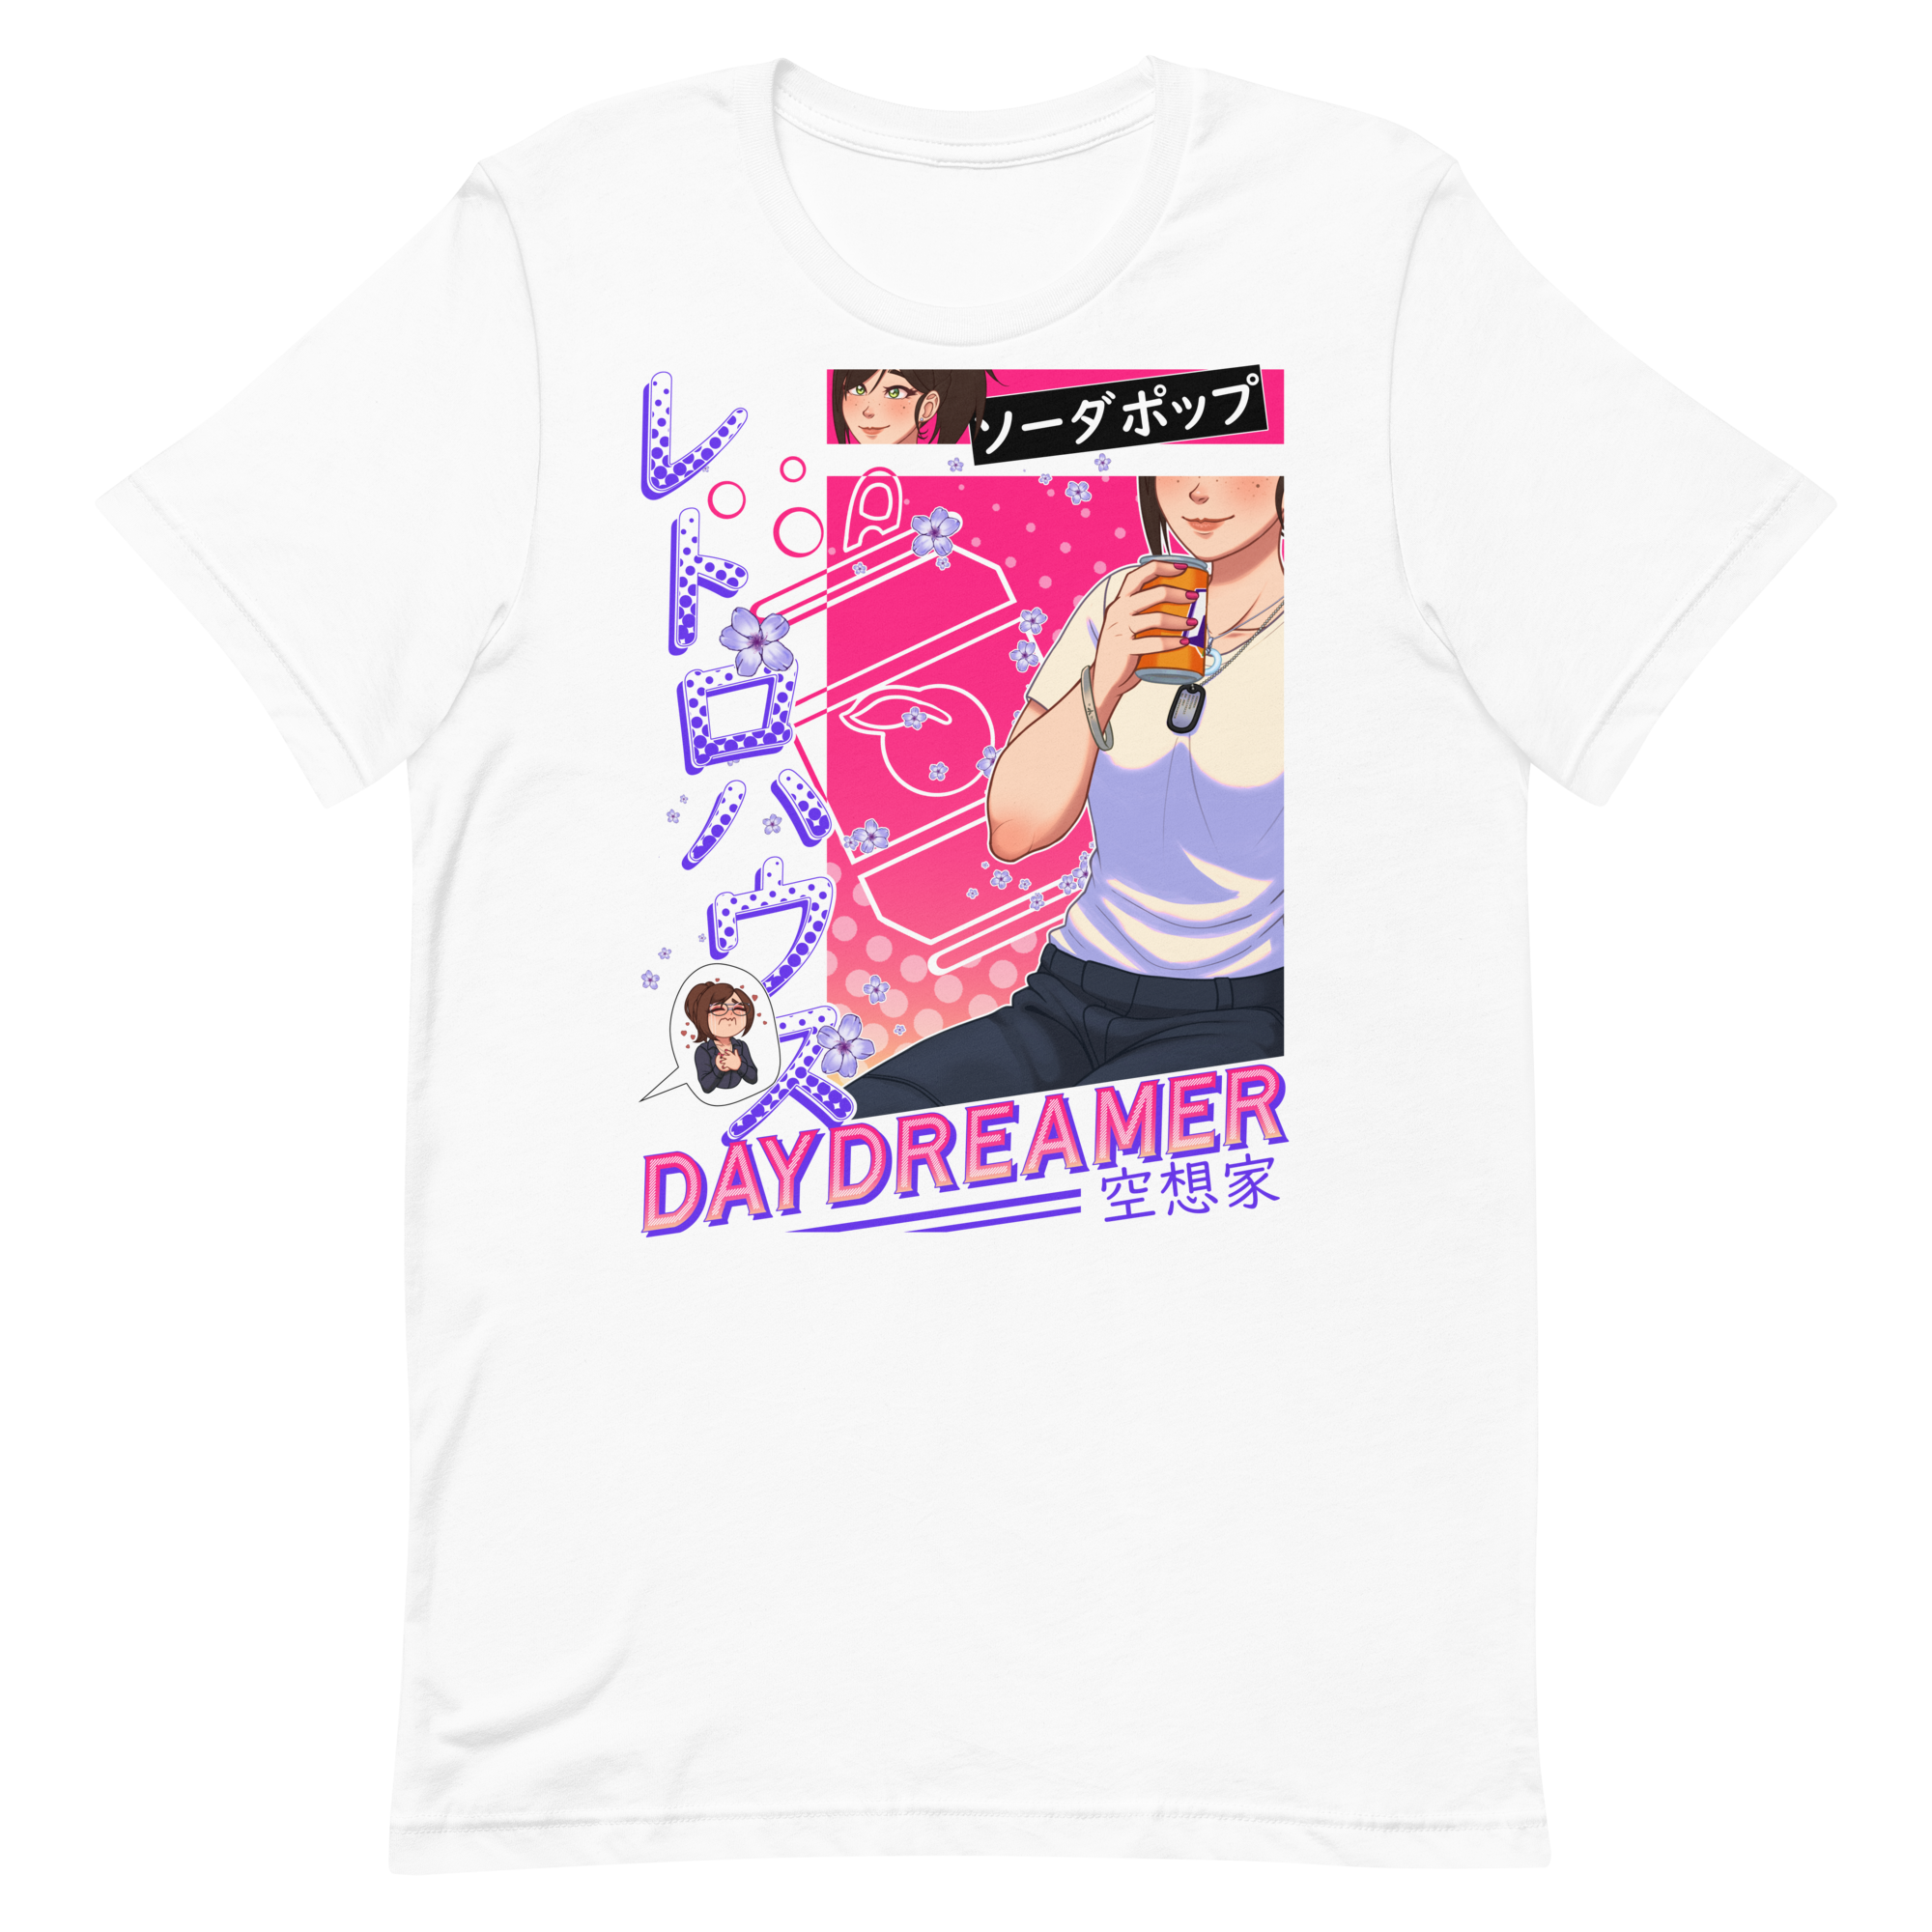 Daydreamer shirt